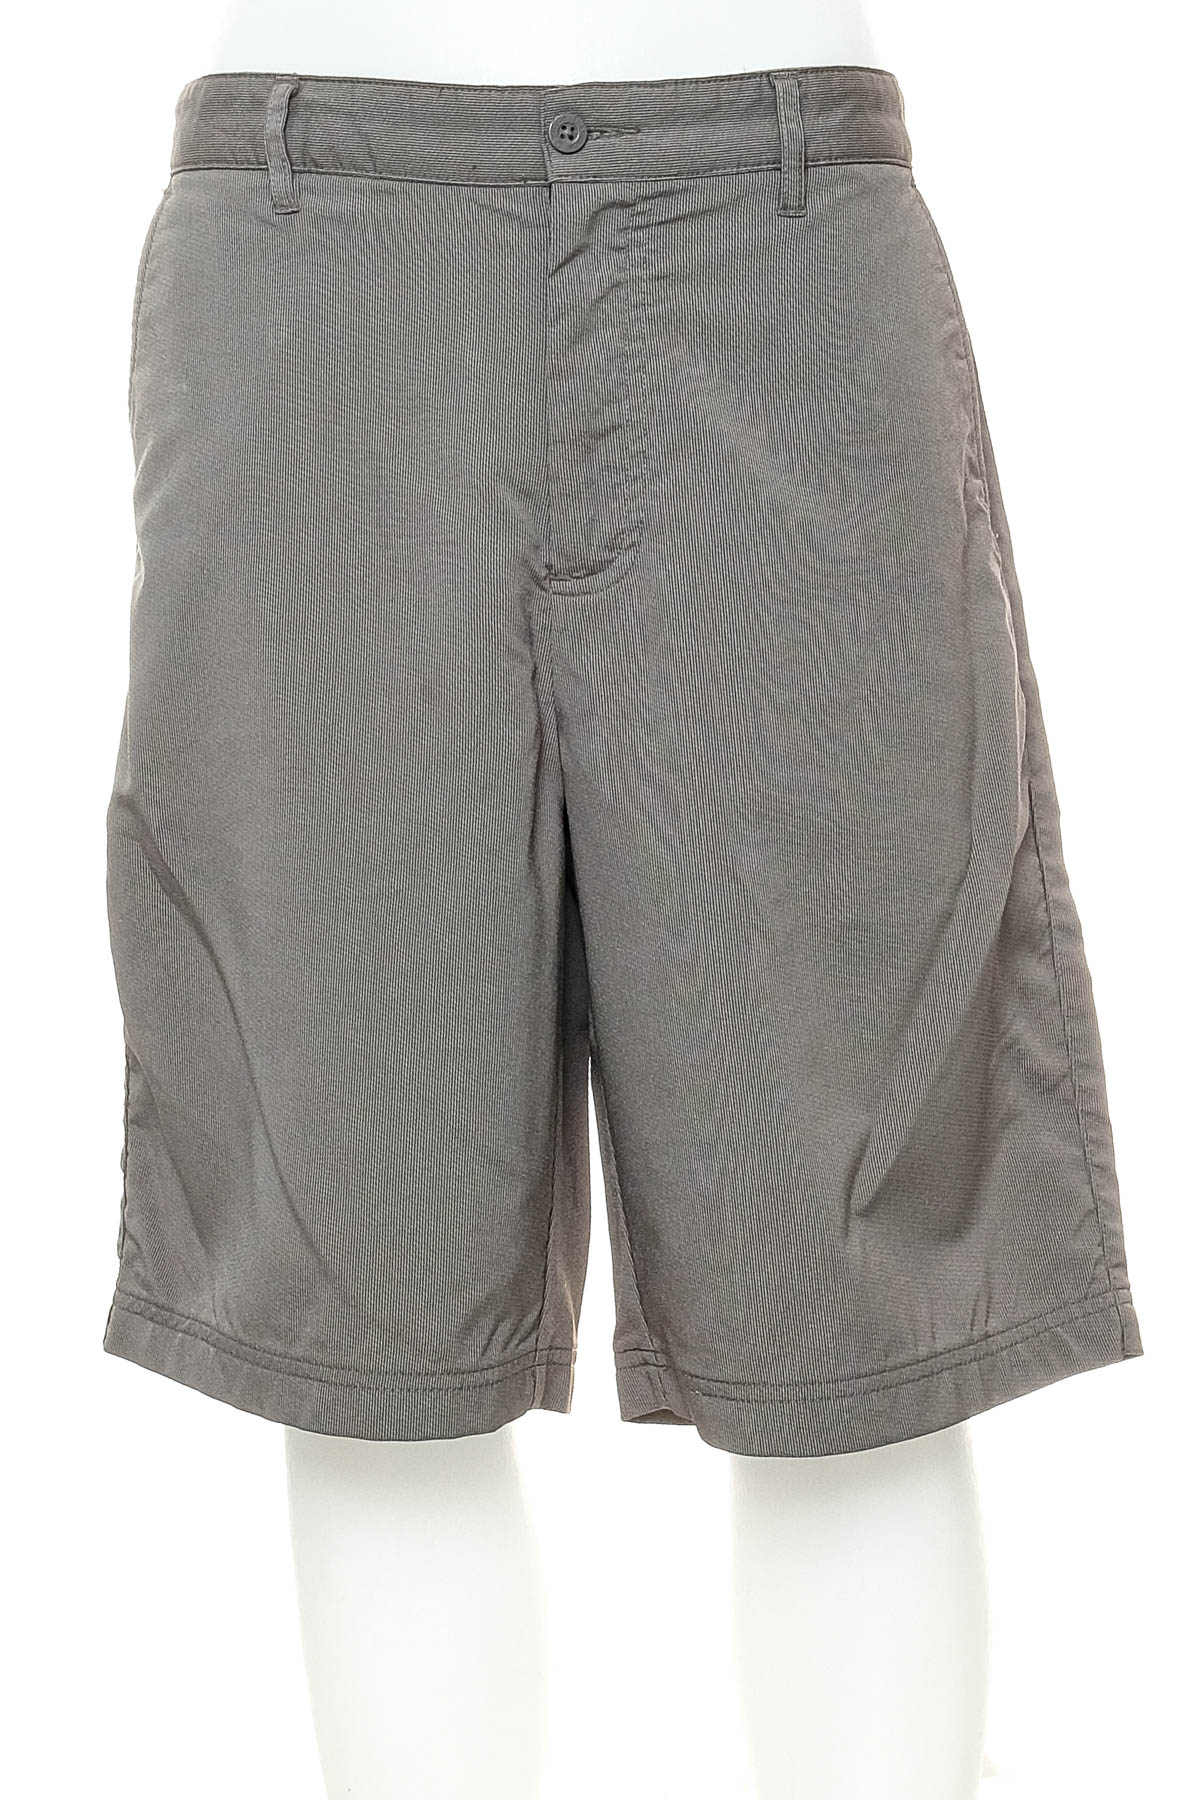 Men's shorts - Sunice - 0